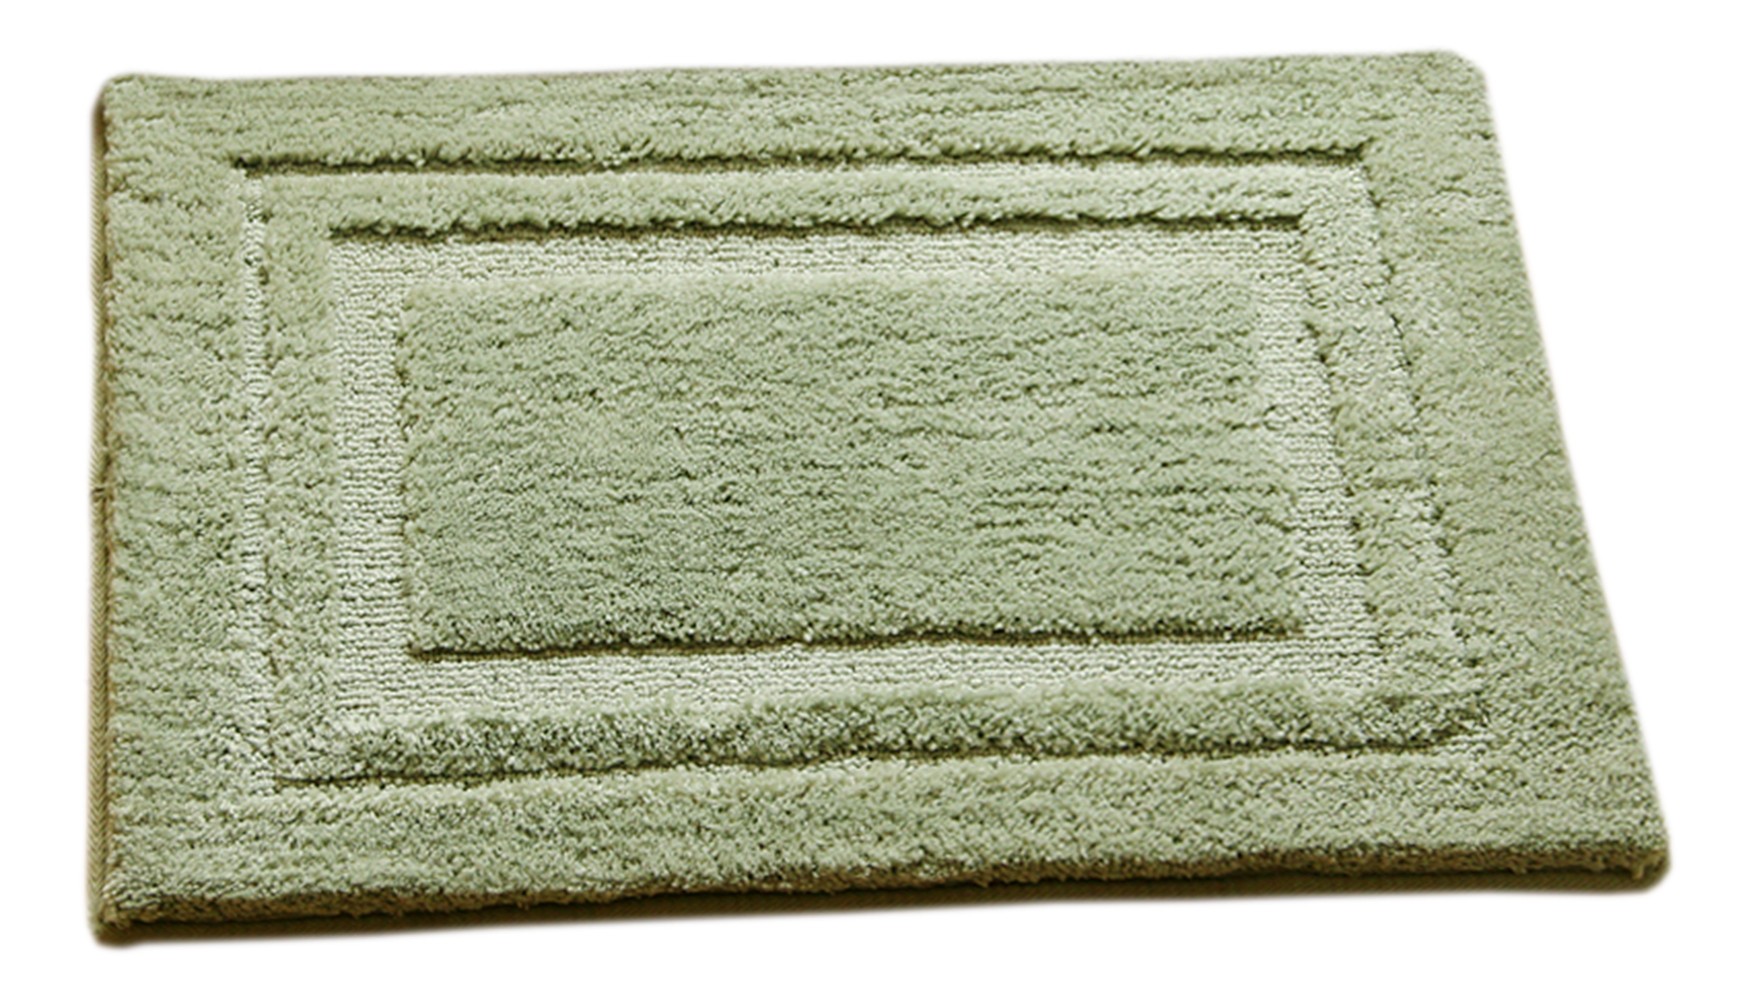 [Morden] Home Decor Rug Bathroom/Living Room Doormat Indoor/Outdoor Mat,Green,15.75x23.62 inches